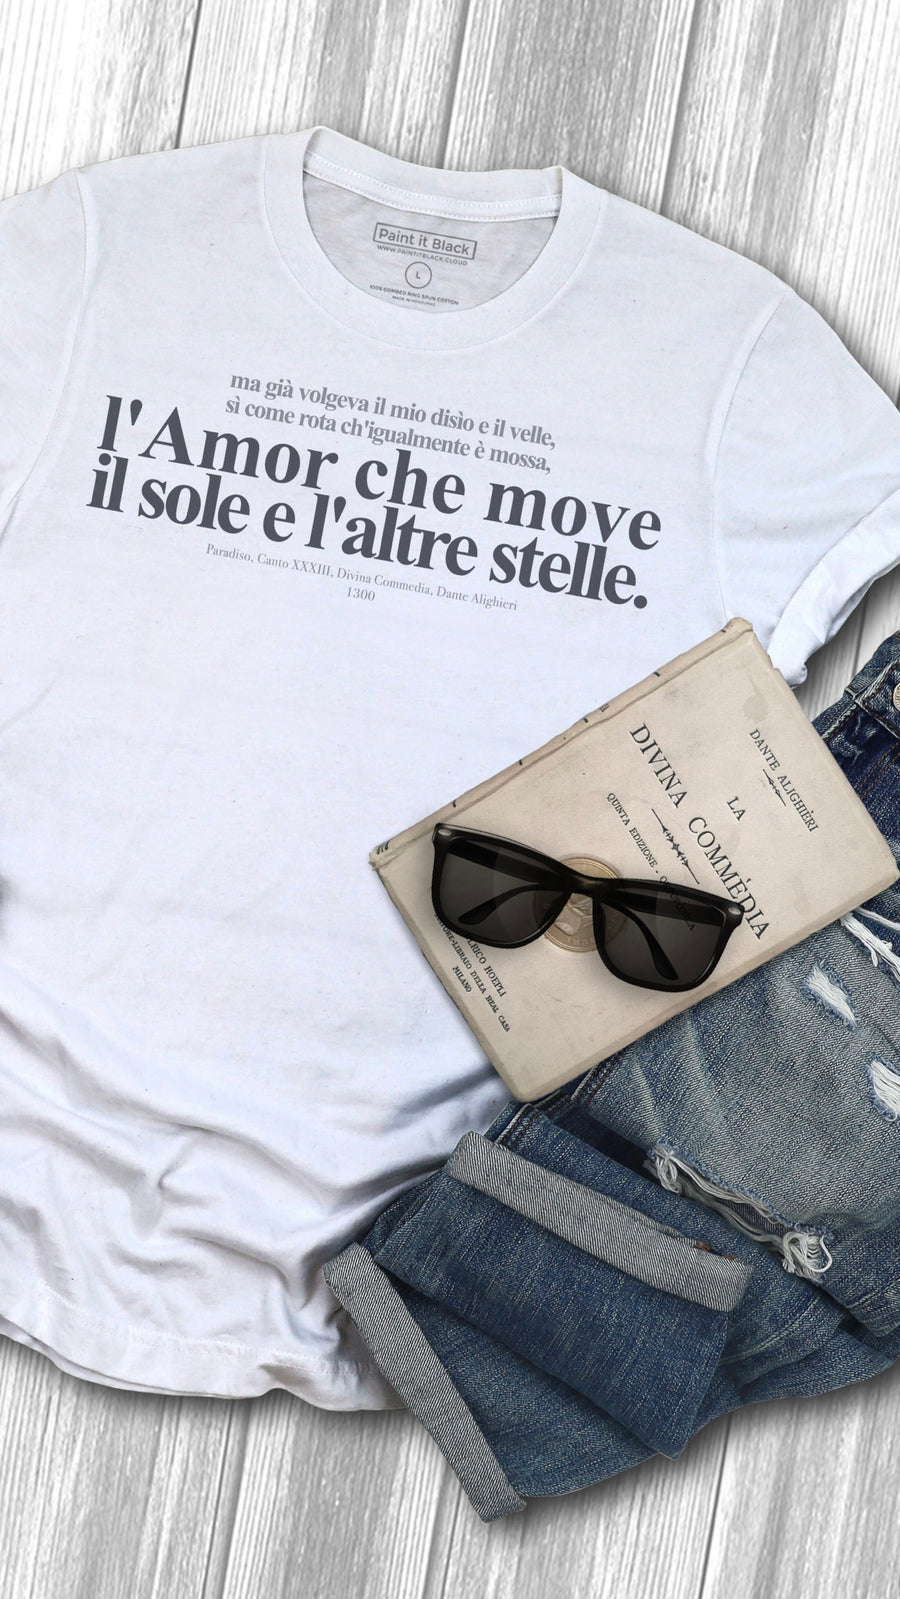 Divina Commedia Dante Alighieri | Unisex T-Shirt Maglietta unisex | Paint It Black T-Shirt Shop